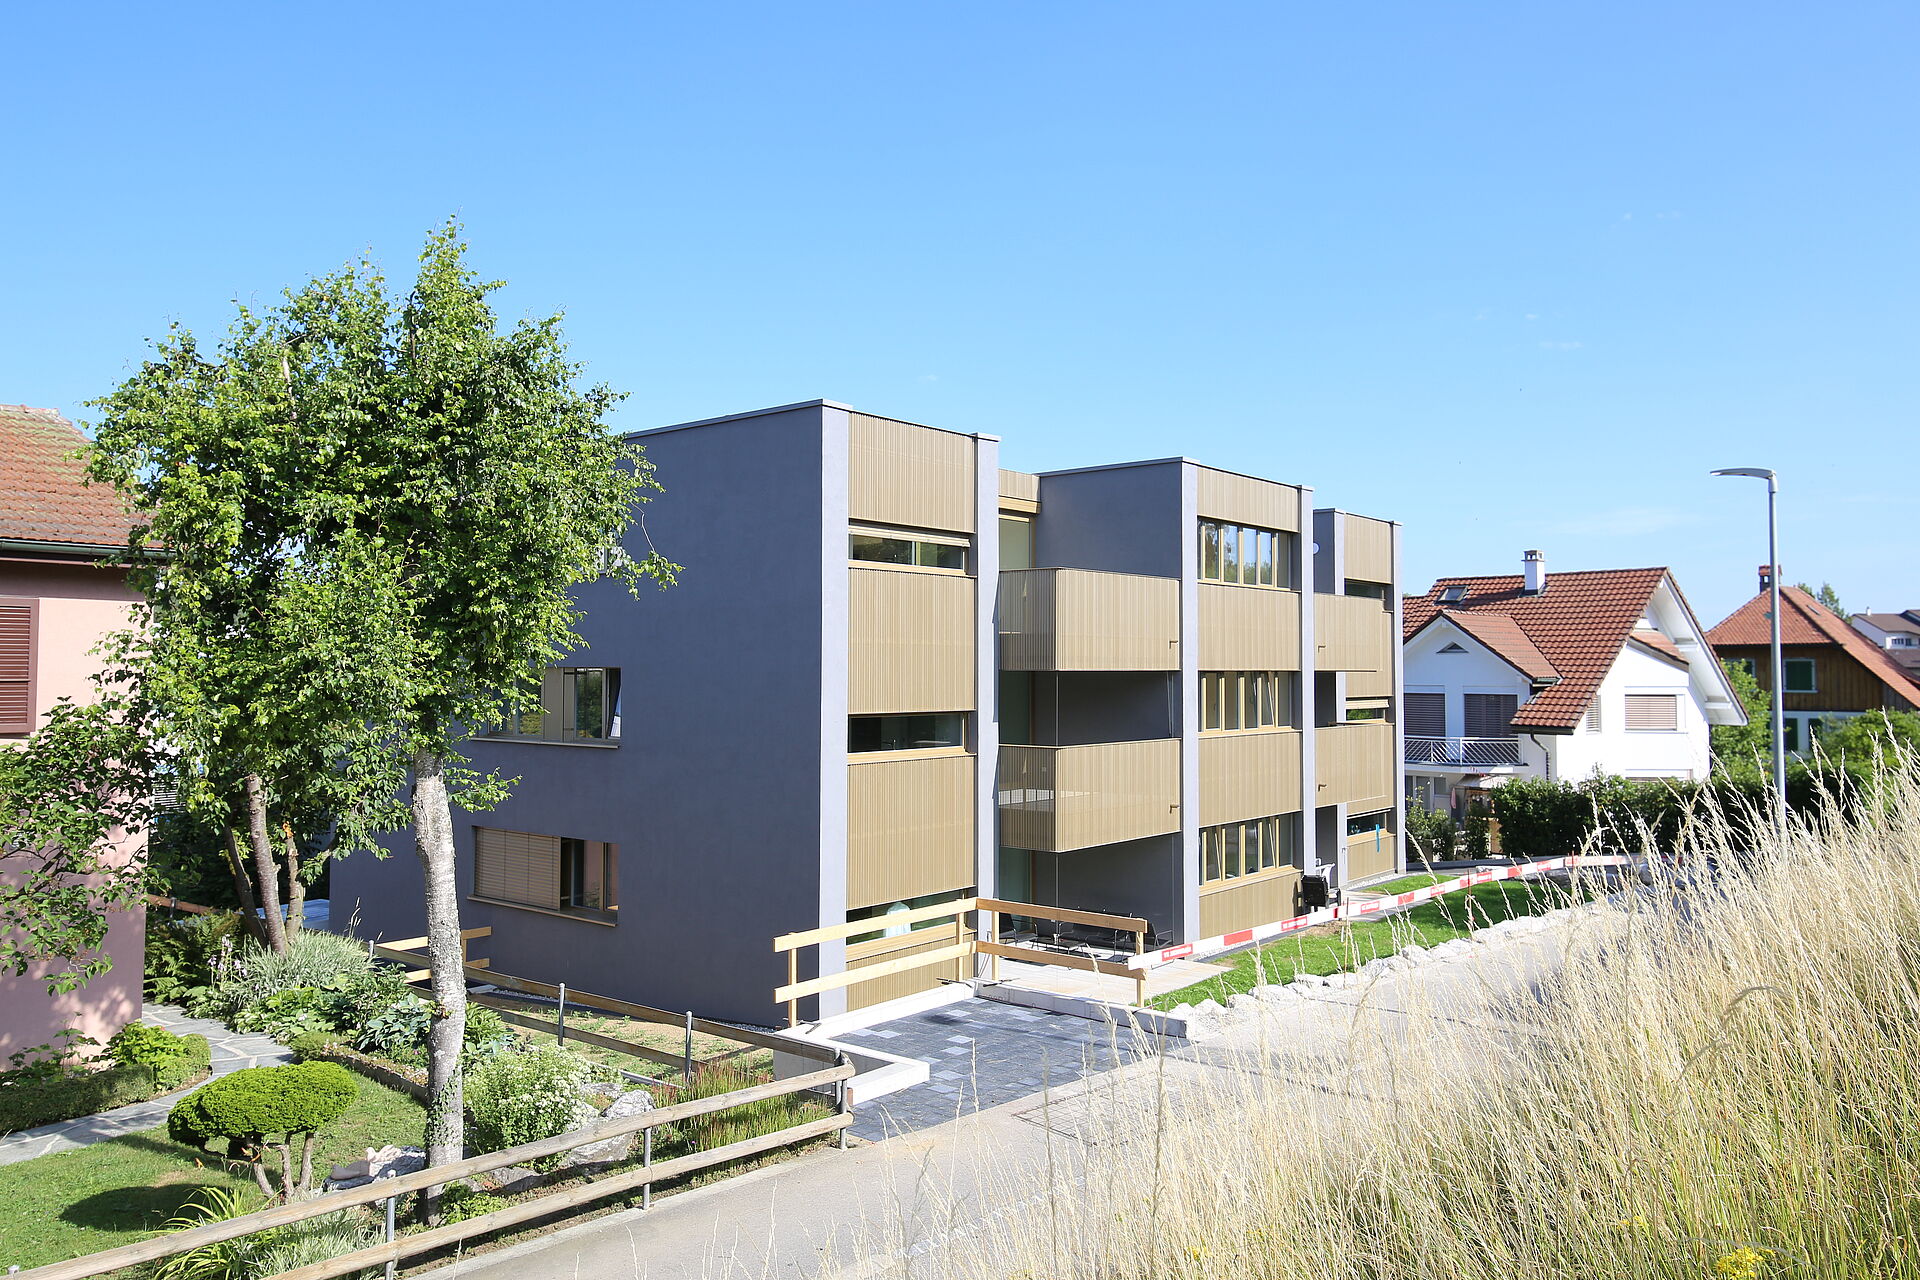 DEJA LOUER - Quartier de Chamblioux - Appartement résidentiel neuf de 3.5 pièces à louer